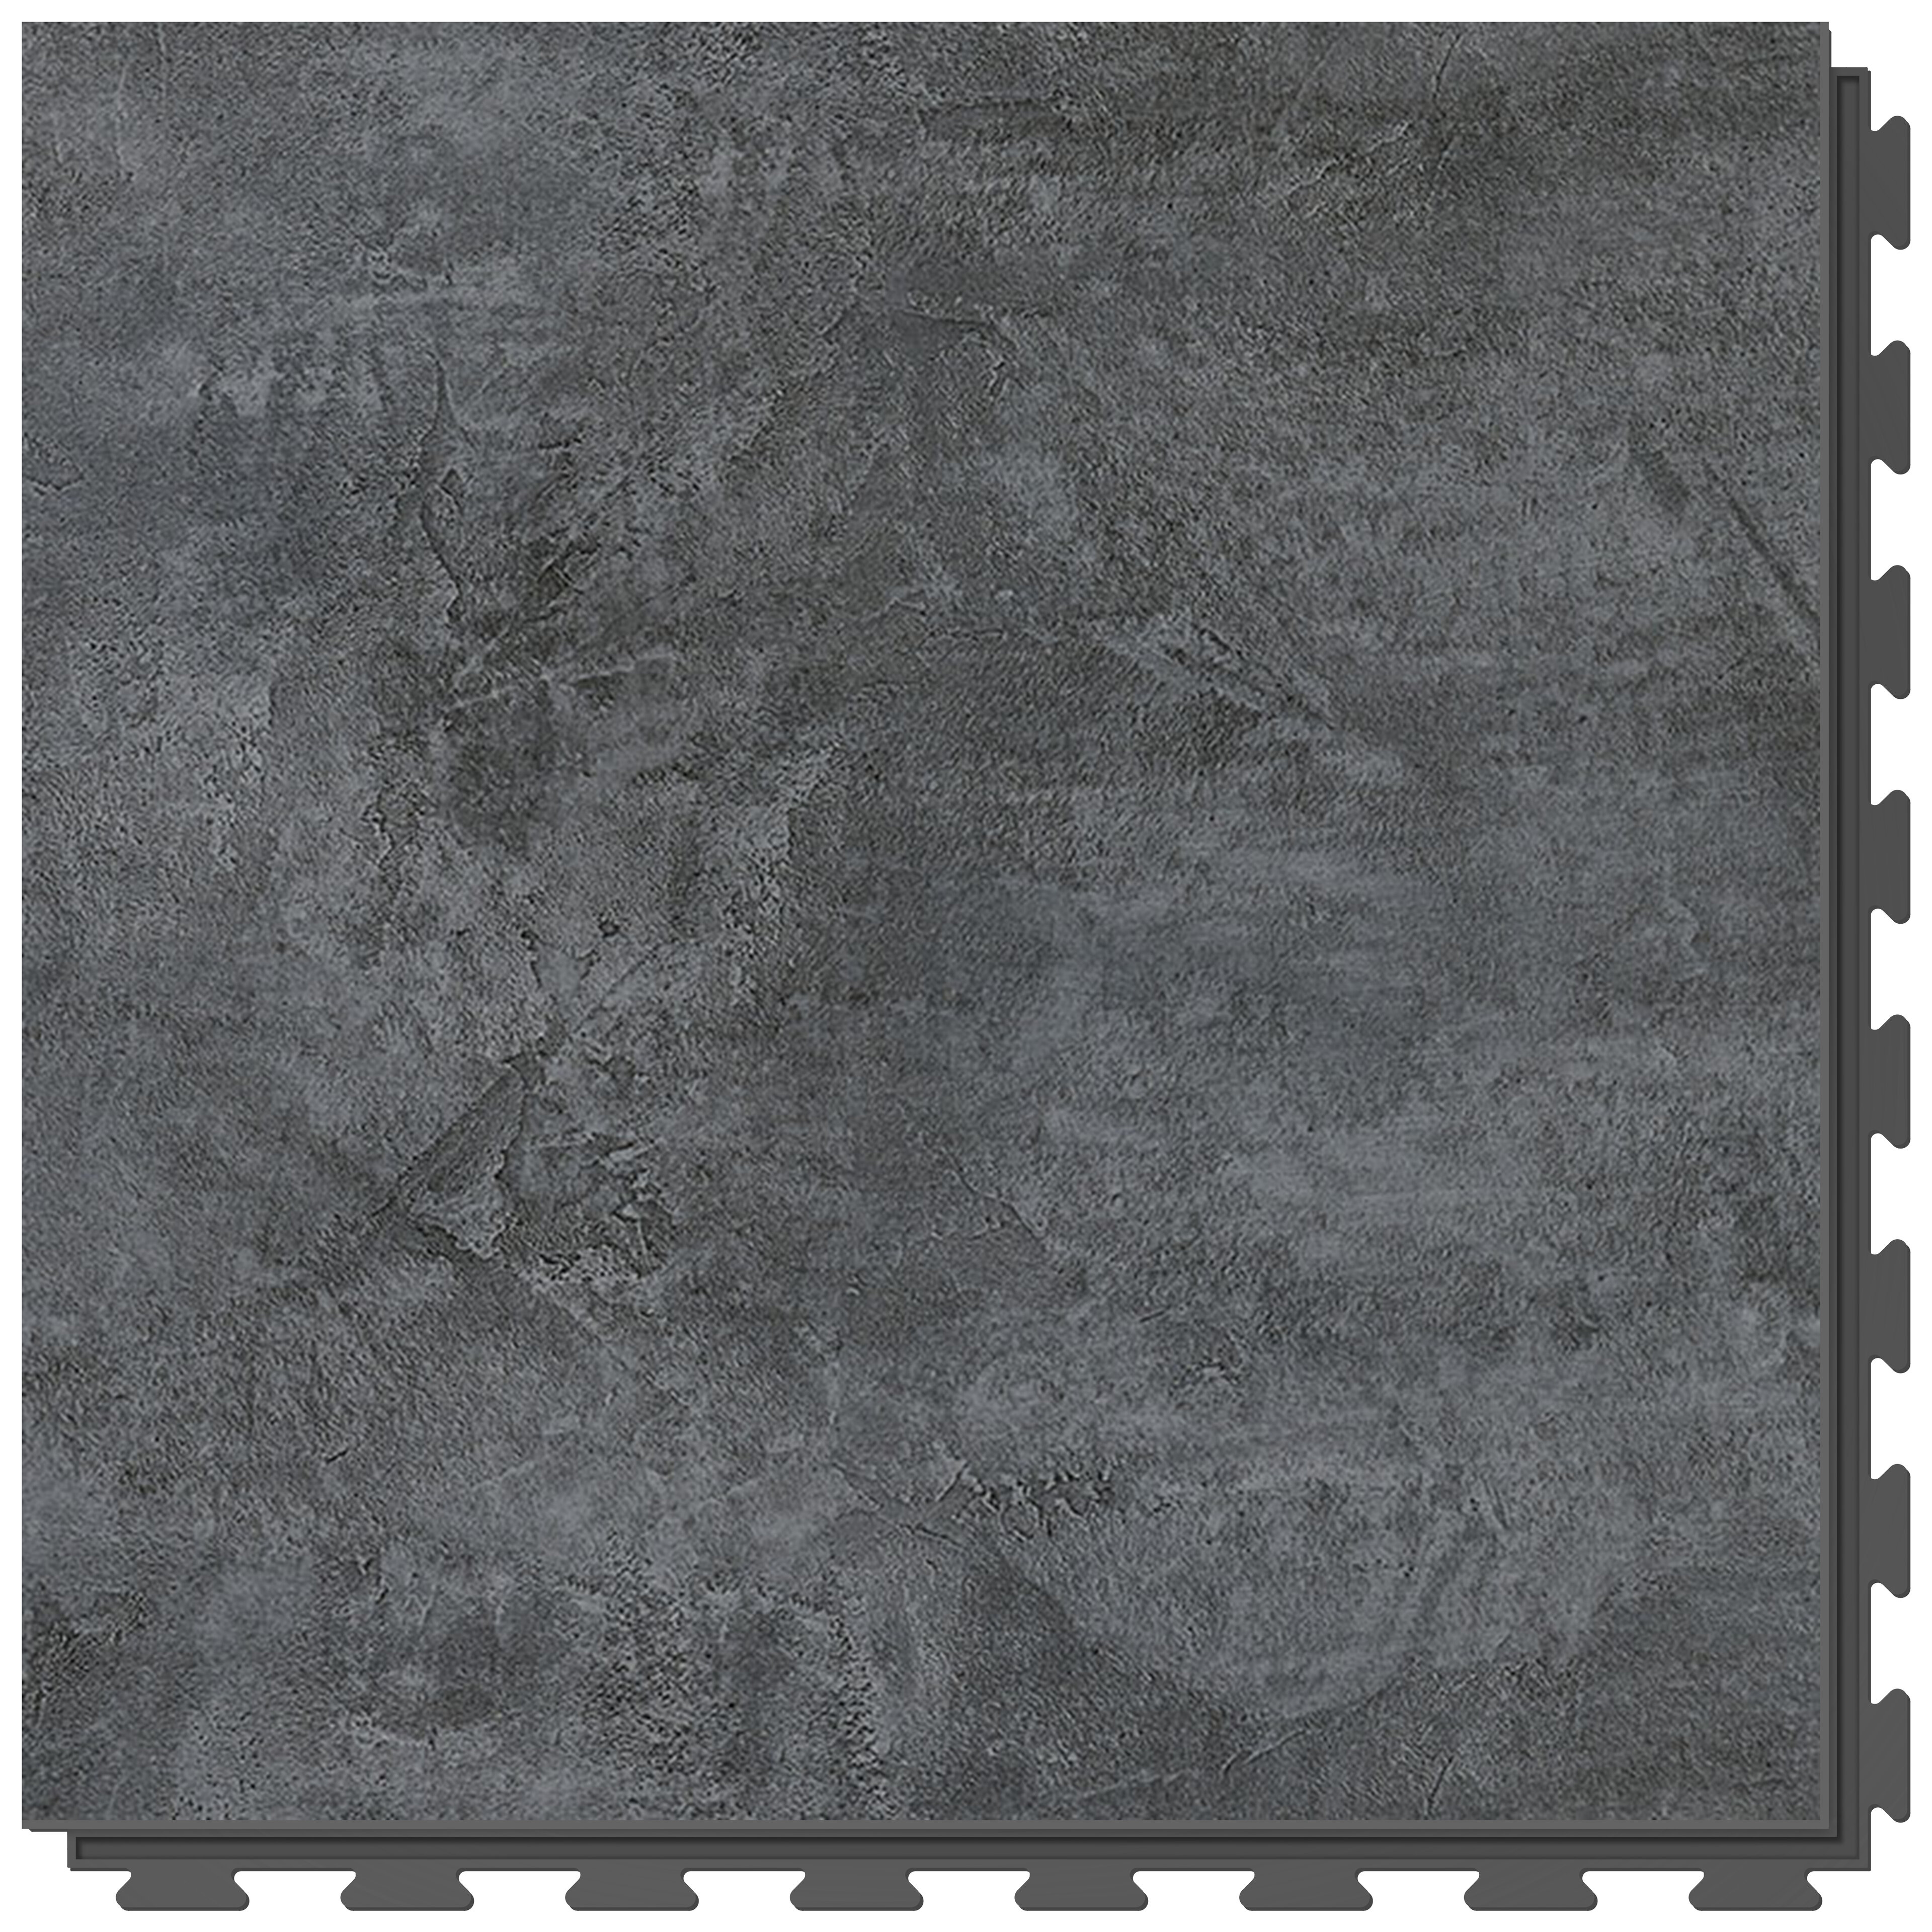 Šedá vinylová PVC dlažba Fortelock Business Graphite Forsen Dark Sky C019 - délka 66,8 cm, šířka 66,8 cm, výška 0,7 cm